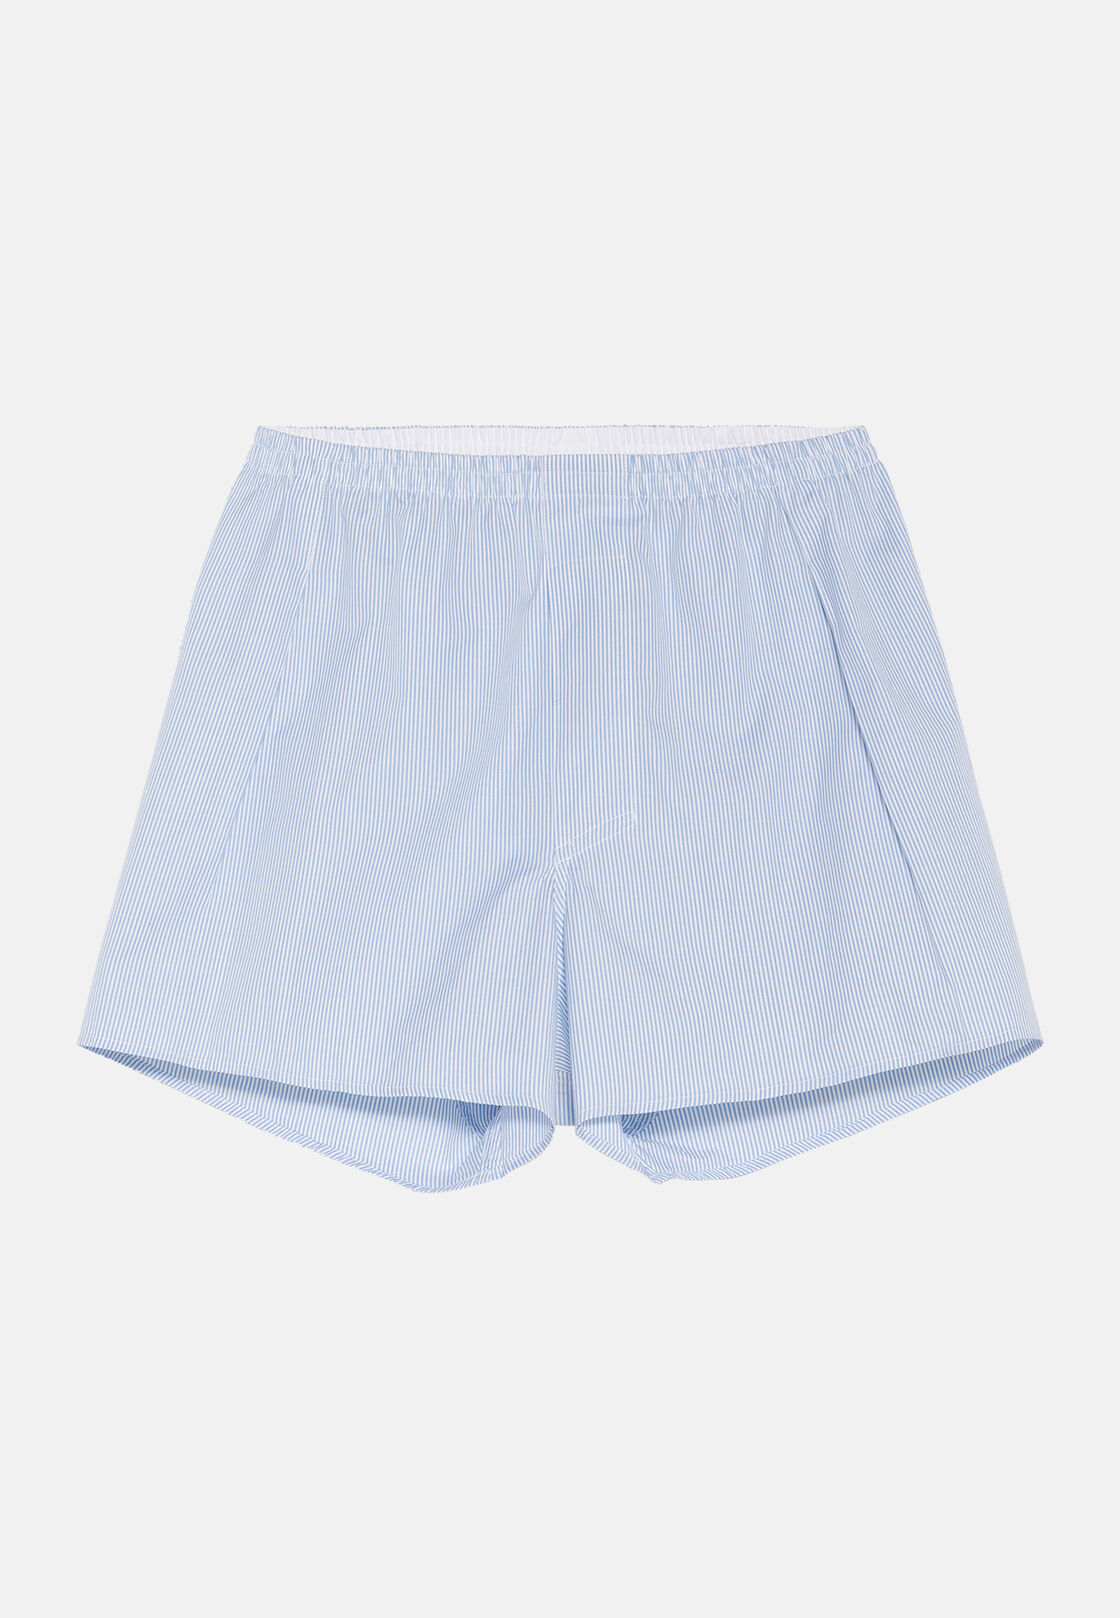 Boxer Wedgiemen's Cotton Boxer Shorts - Comfortable Spandex Blend, Solid  Pattern